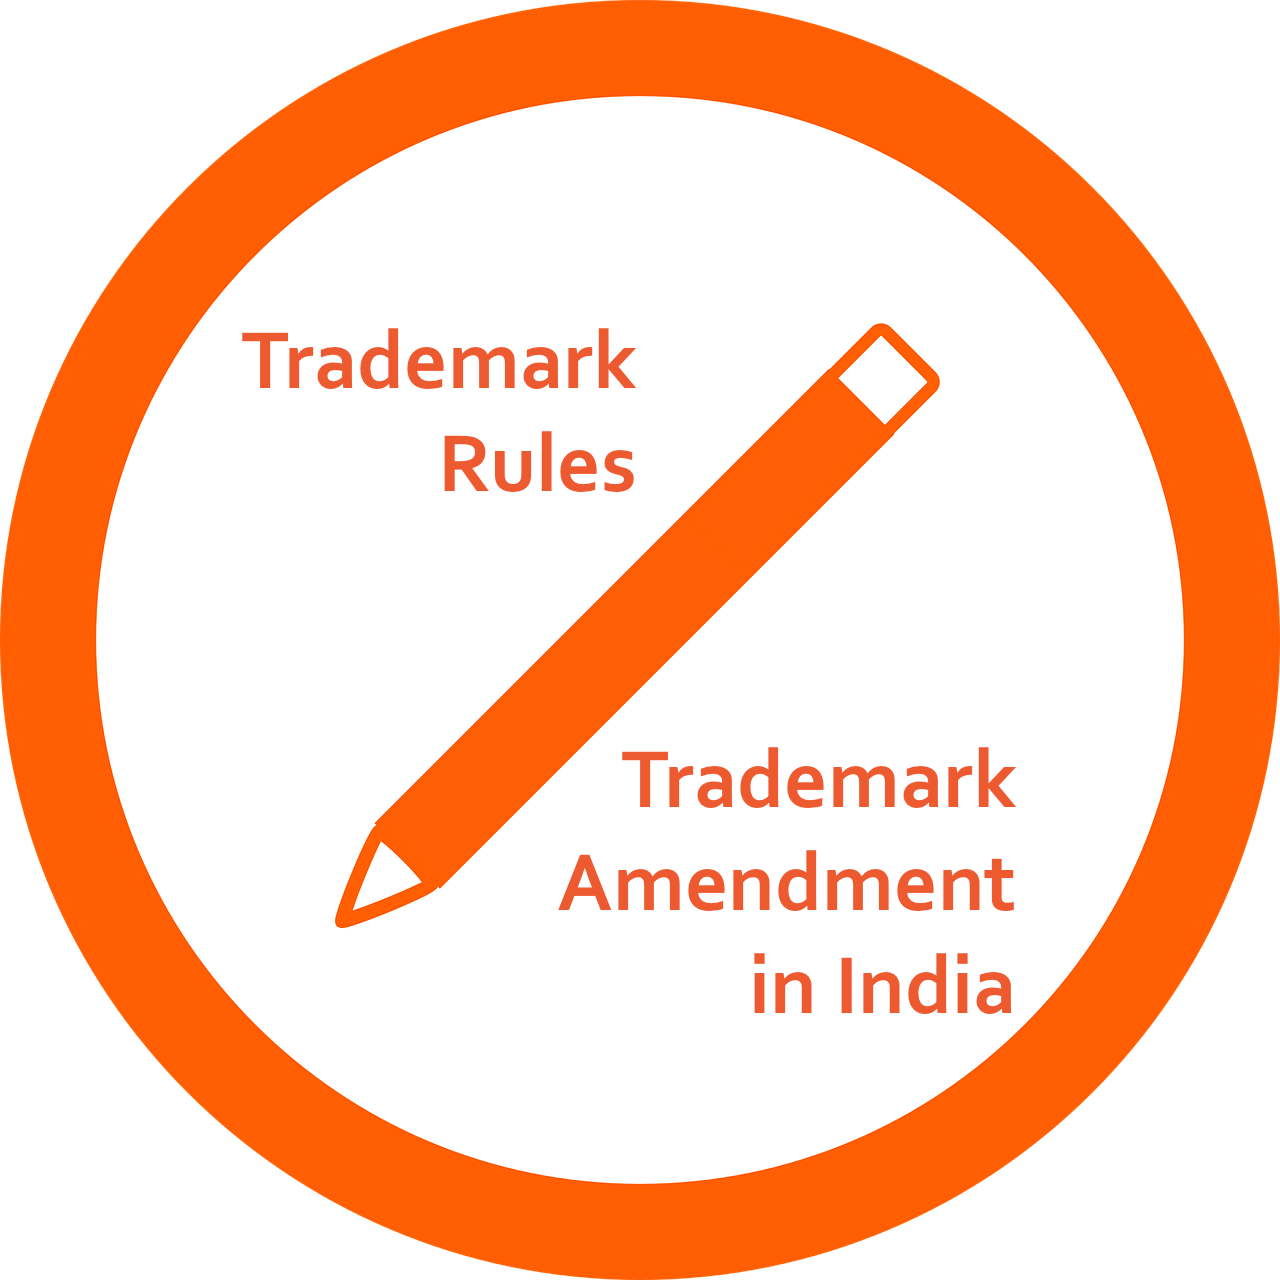 trademark-rules-amendment-india